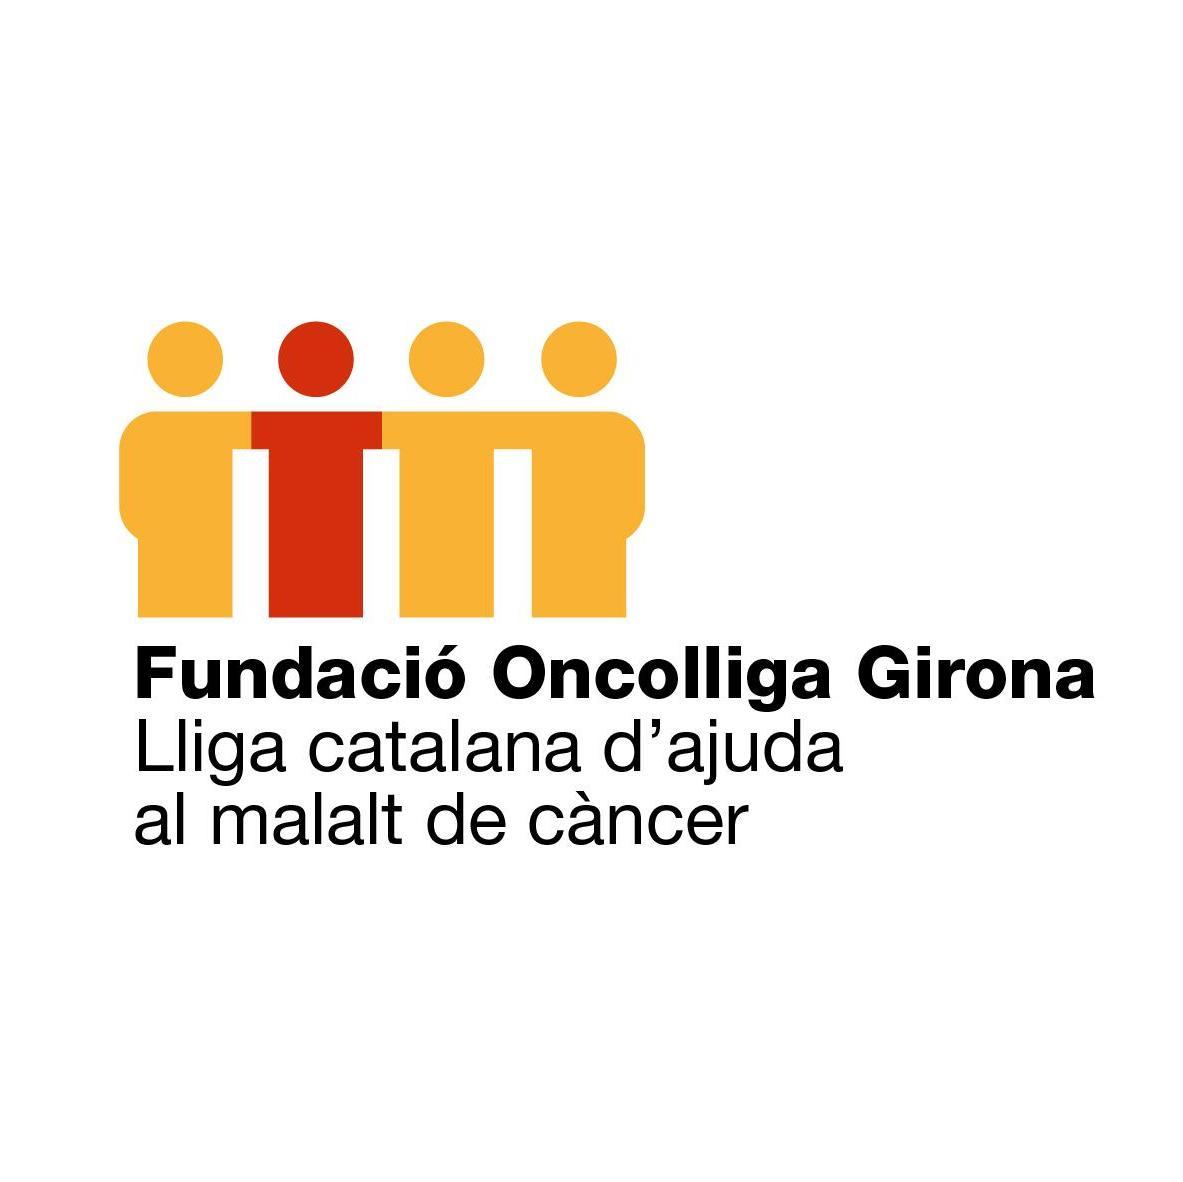 Fundació Oncolliga Girona - El teu perfil. Vota, valora i comunica’t